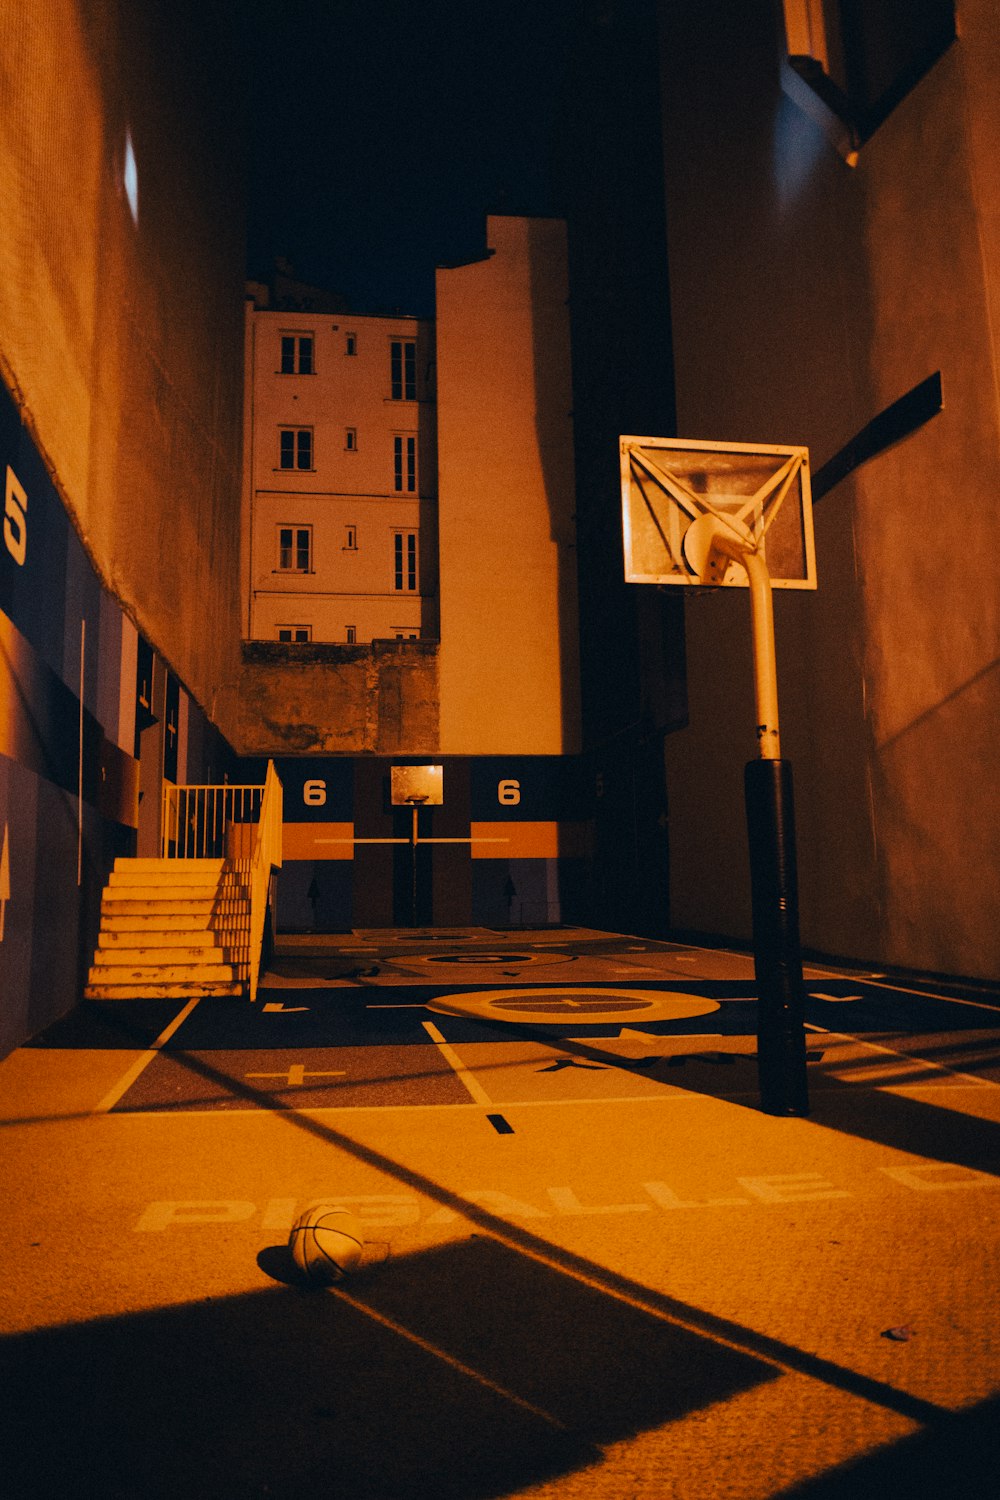 バスケットボールコートの真ん中にあるバスケットボールのフープ